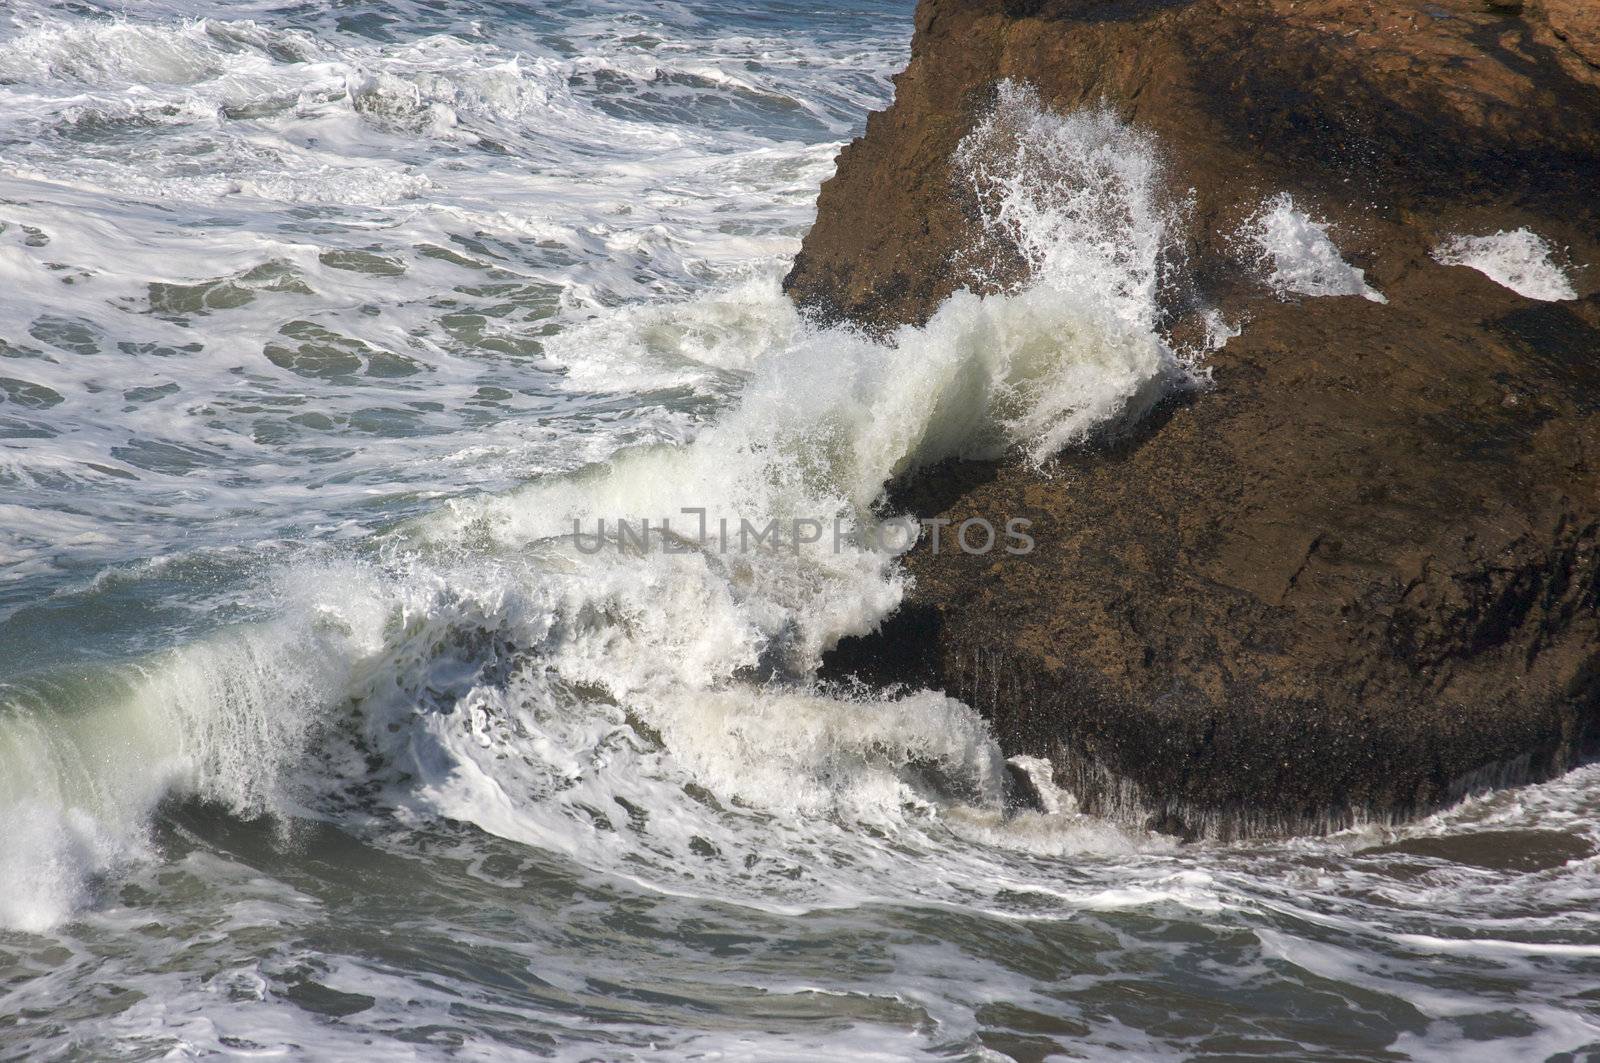 Pacific Ocean Waves break against the rocks.